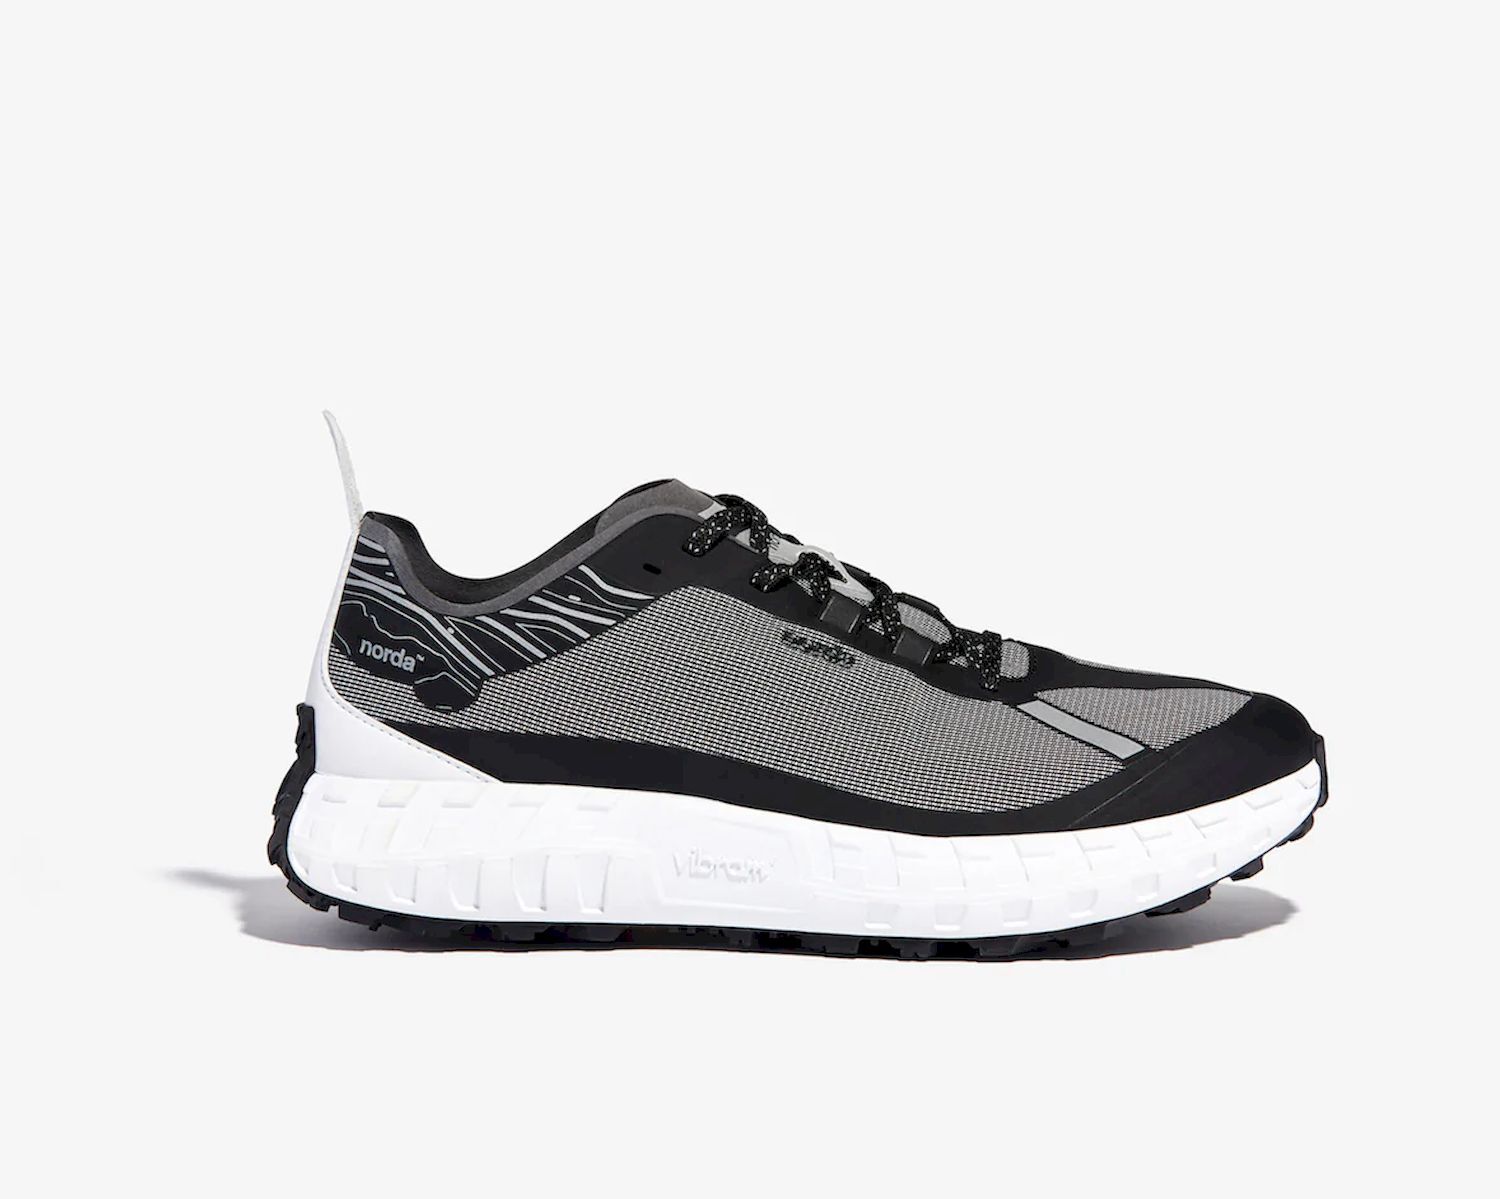 Norda Norda 001 - Trail running shoes - Men's